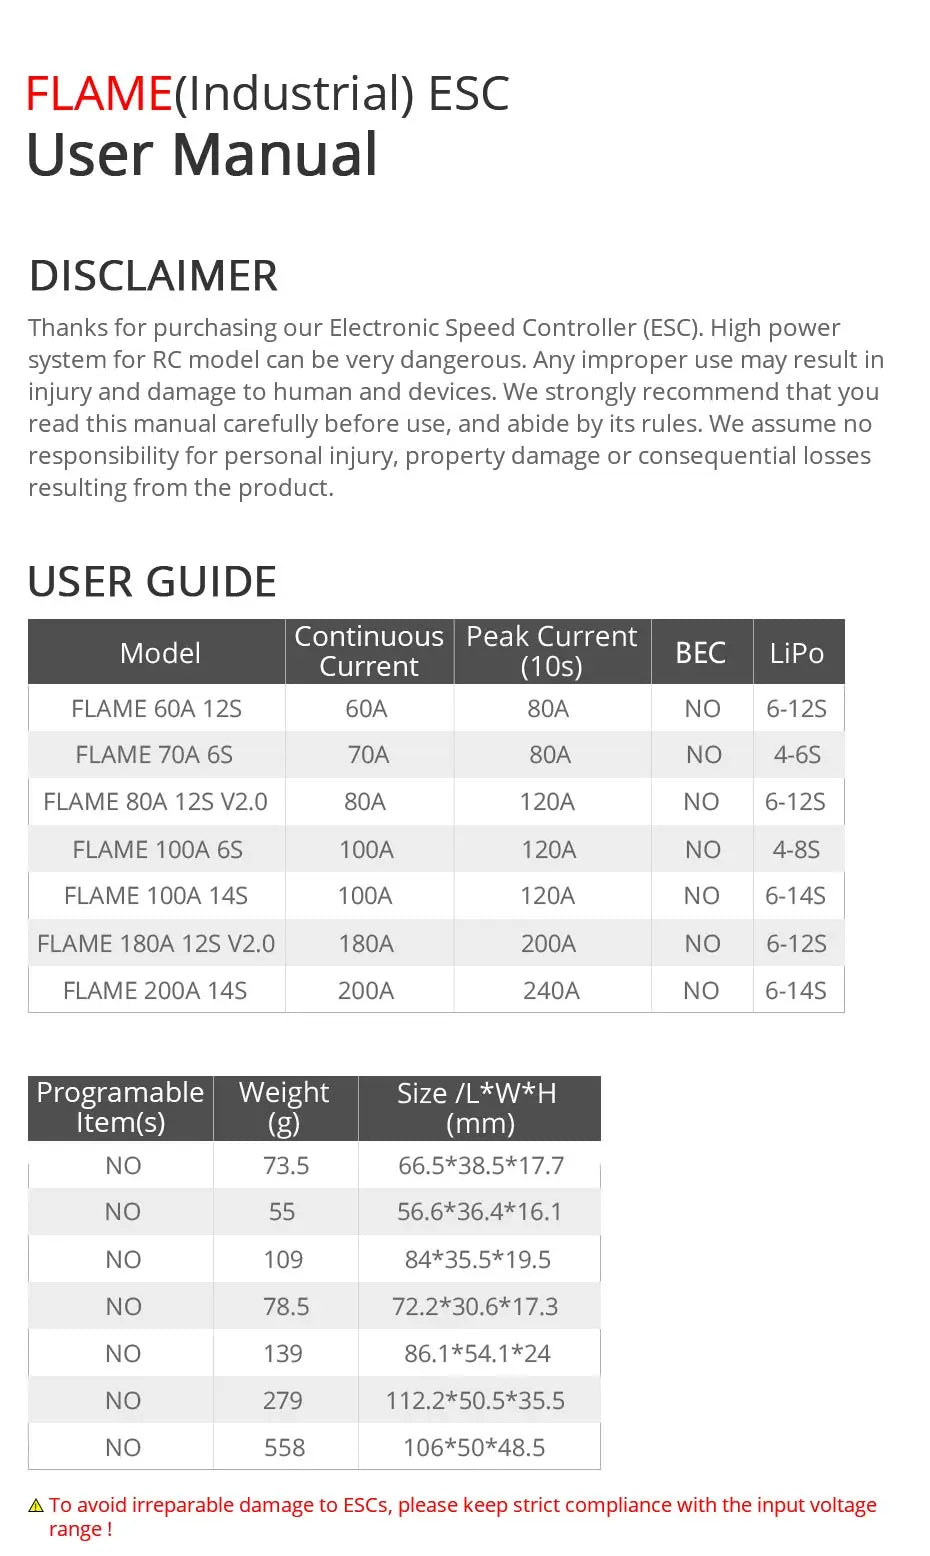 T-MOTOR FLAME 80A HV V2.0 ESC, ESC user manual: high power system for RC model can be very dangerous . manual